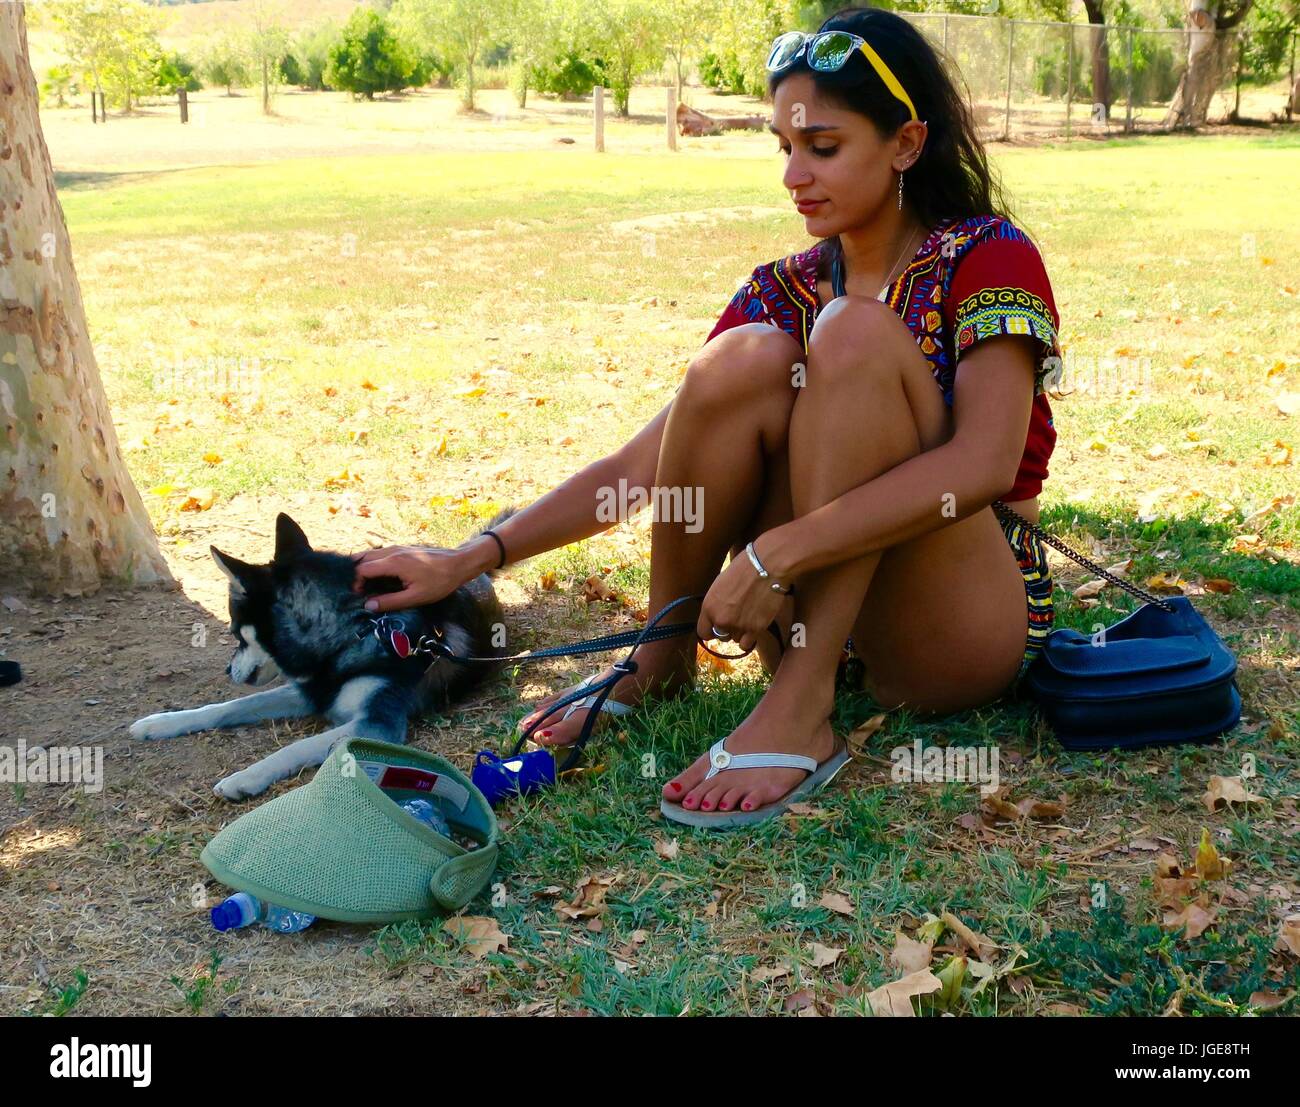 Jolie femme habillée de couleurs vives avec chien dans un parc Banque D'Images